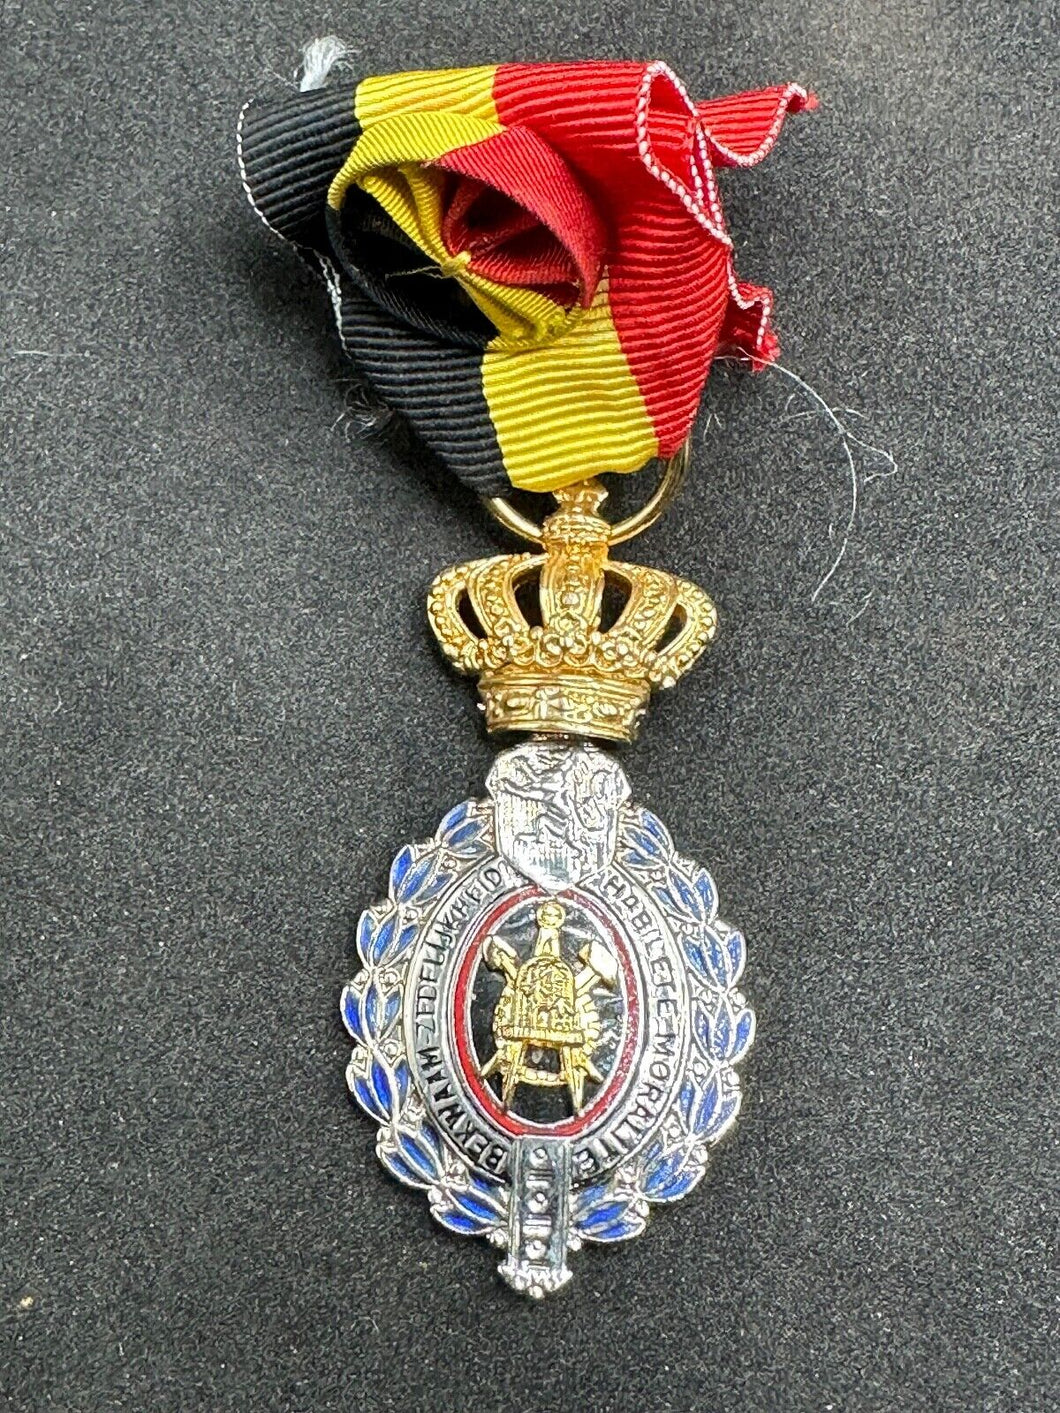 Original WW2 era Belgian Labour Medal - Belgium Habilete Moralite Medal